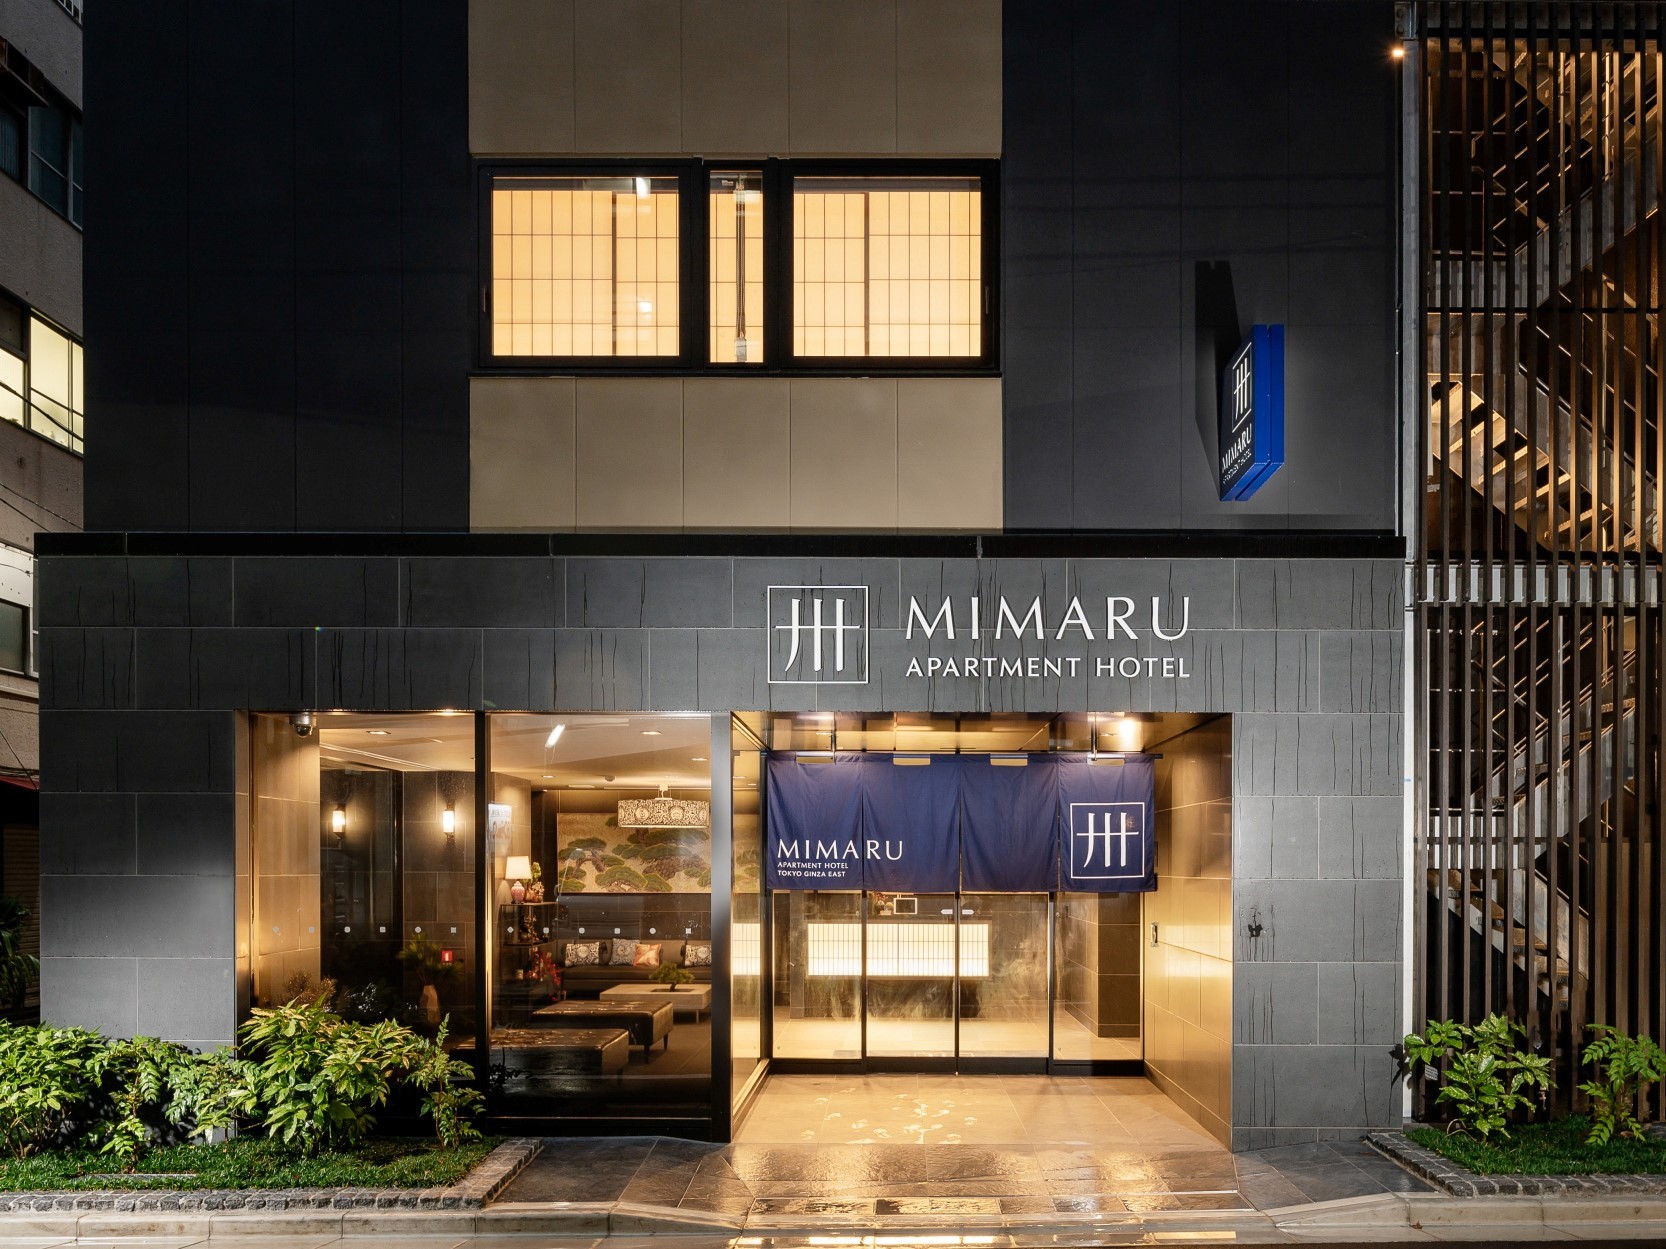 以現代日式風格客房為特色的apartment Hotel Mimaru 於11月在東京銀座地區開幕 Business Wire